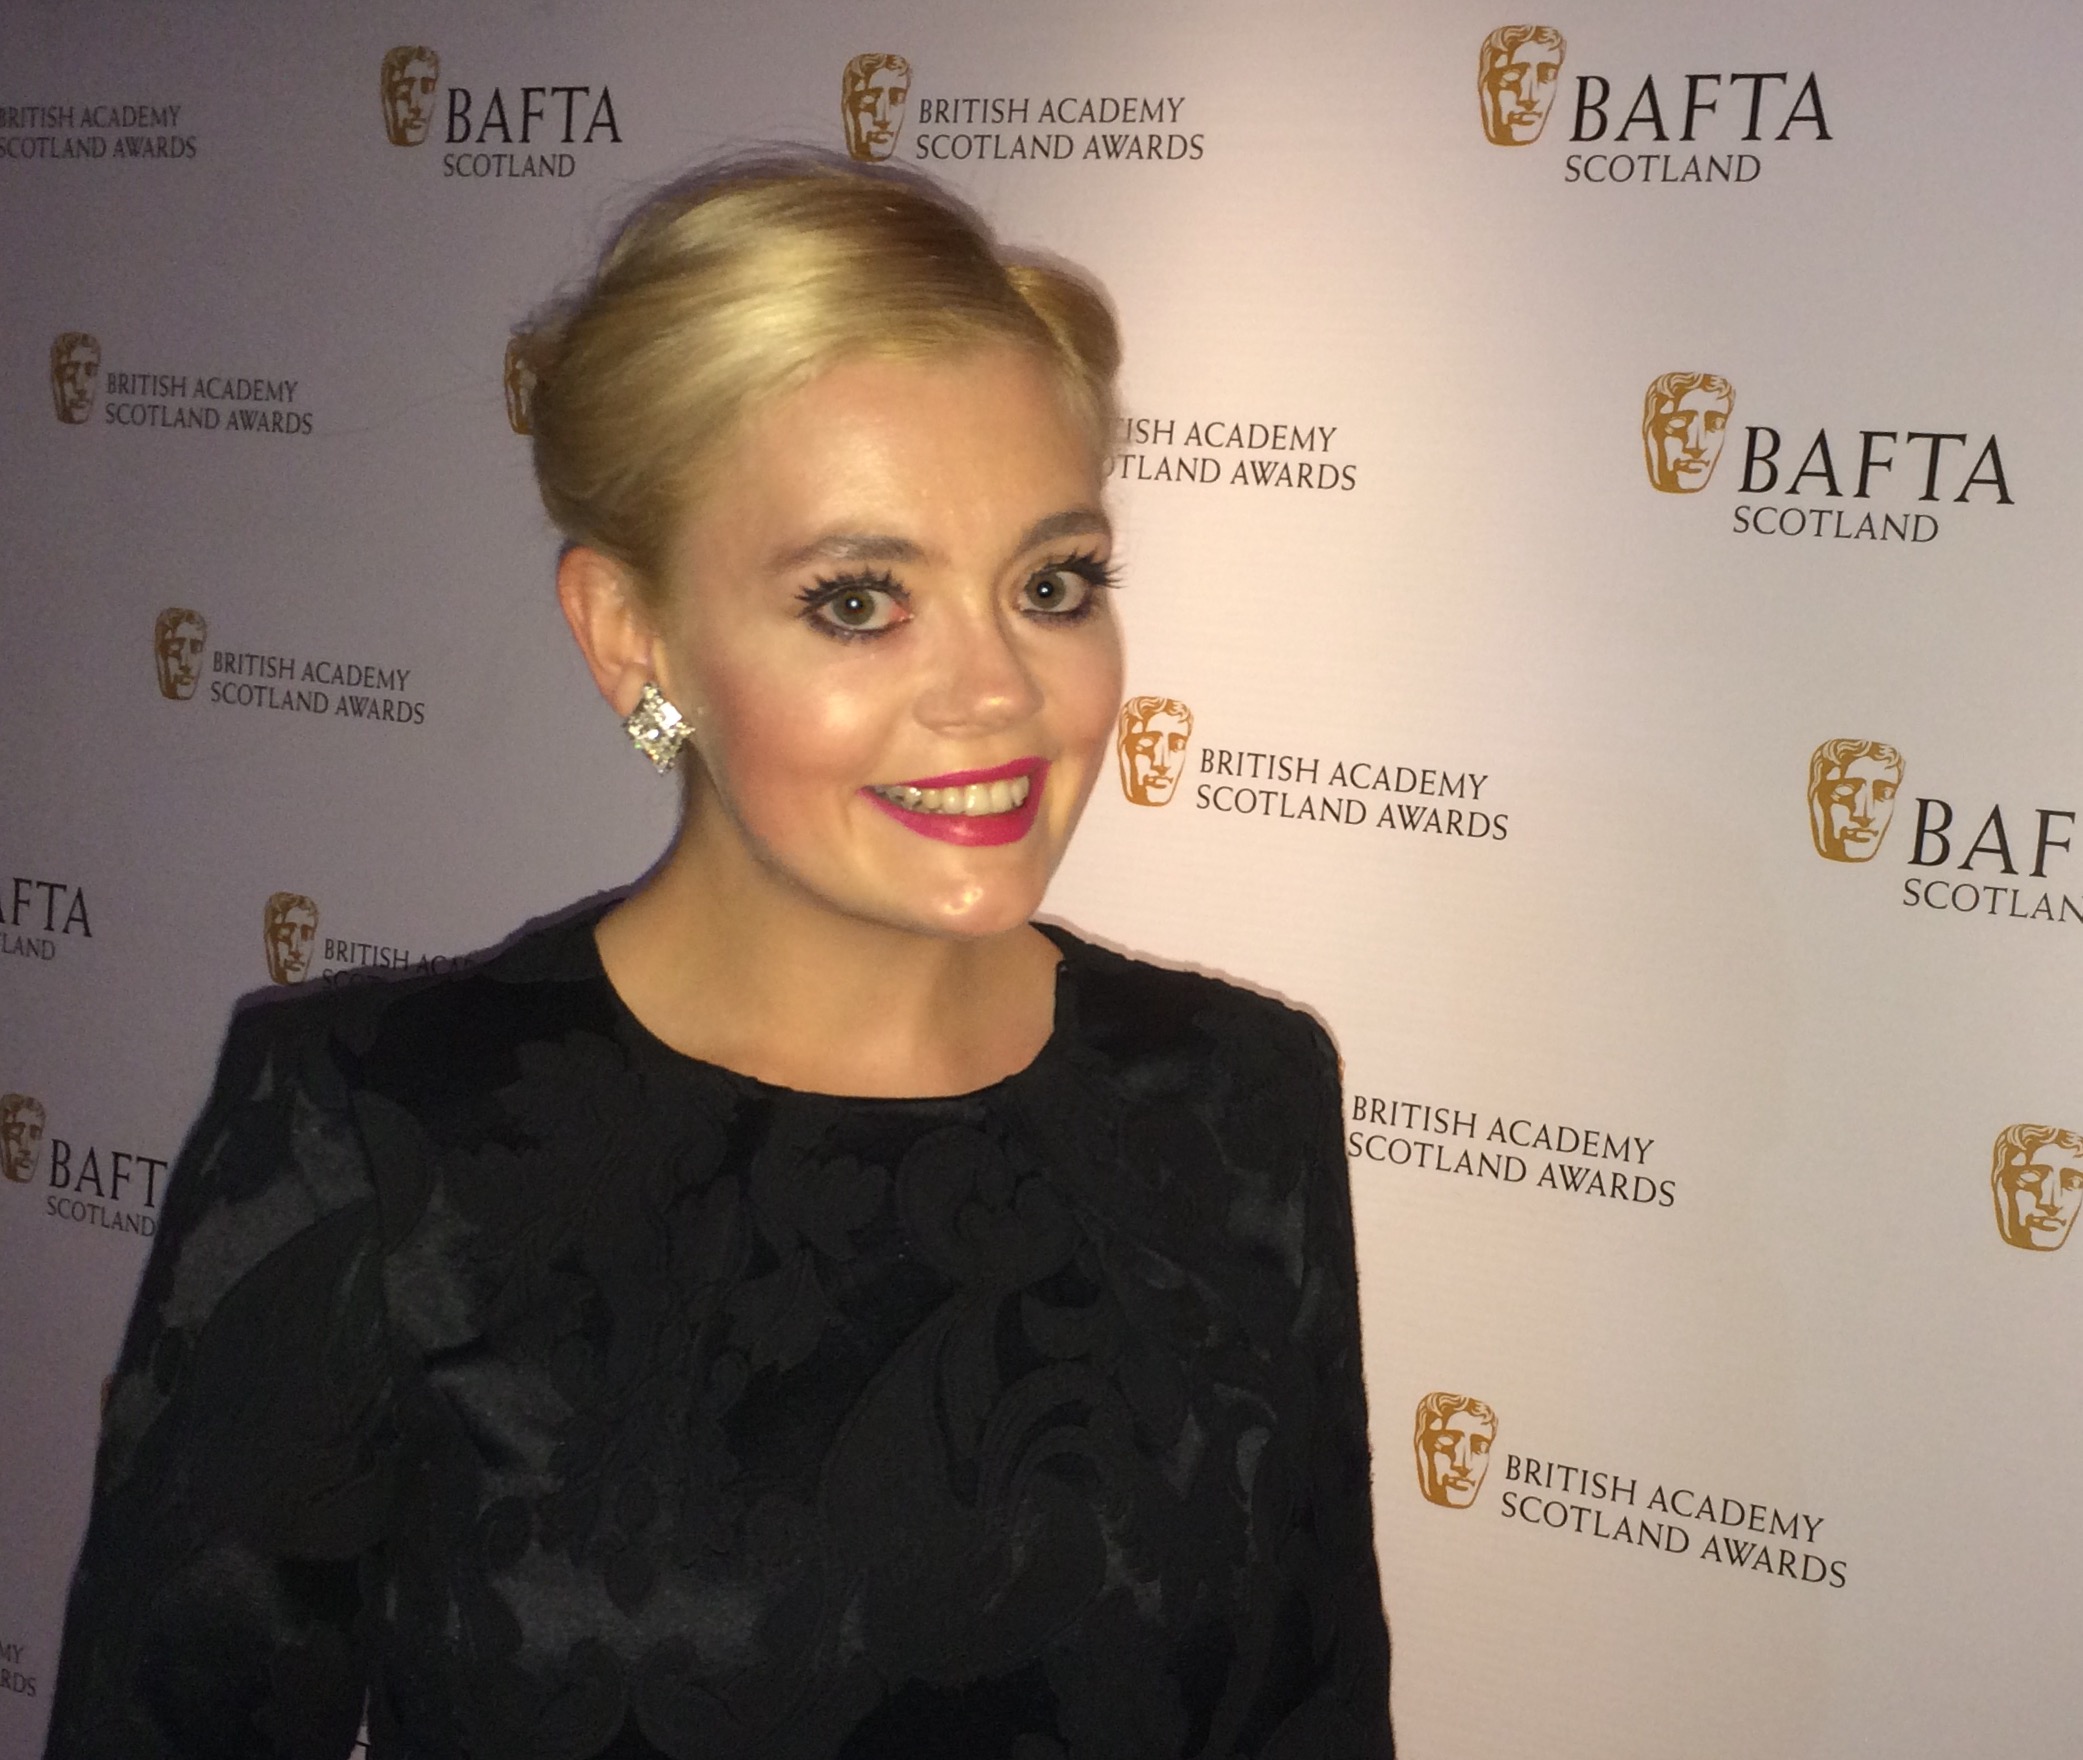 Attending the Scottish BAFTA Awards 2015.